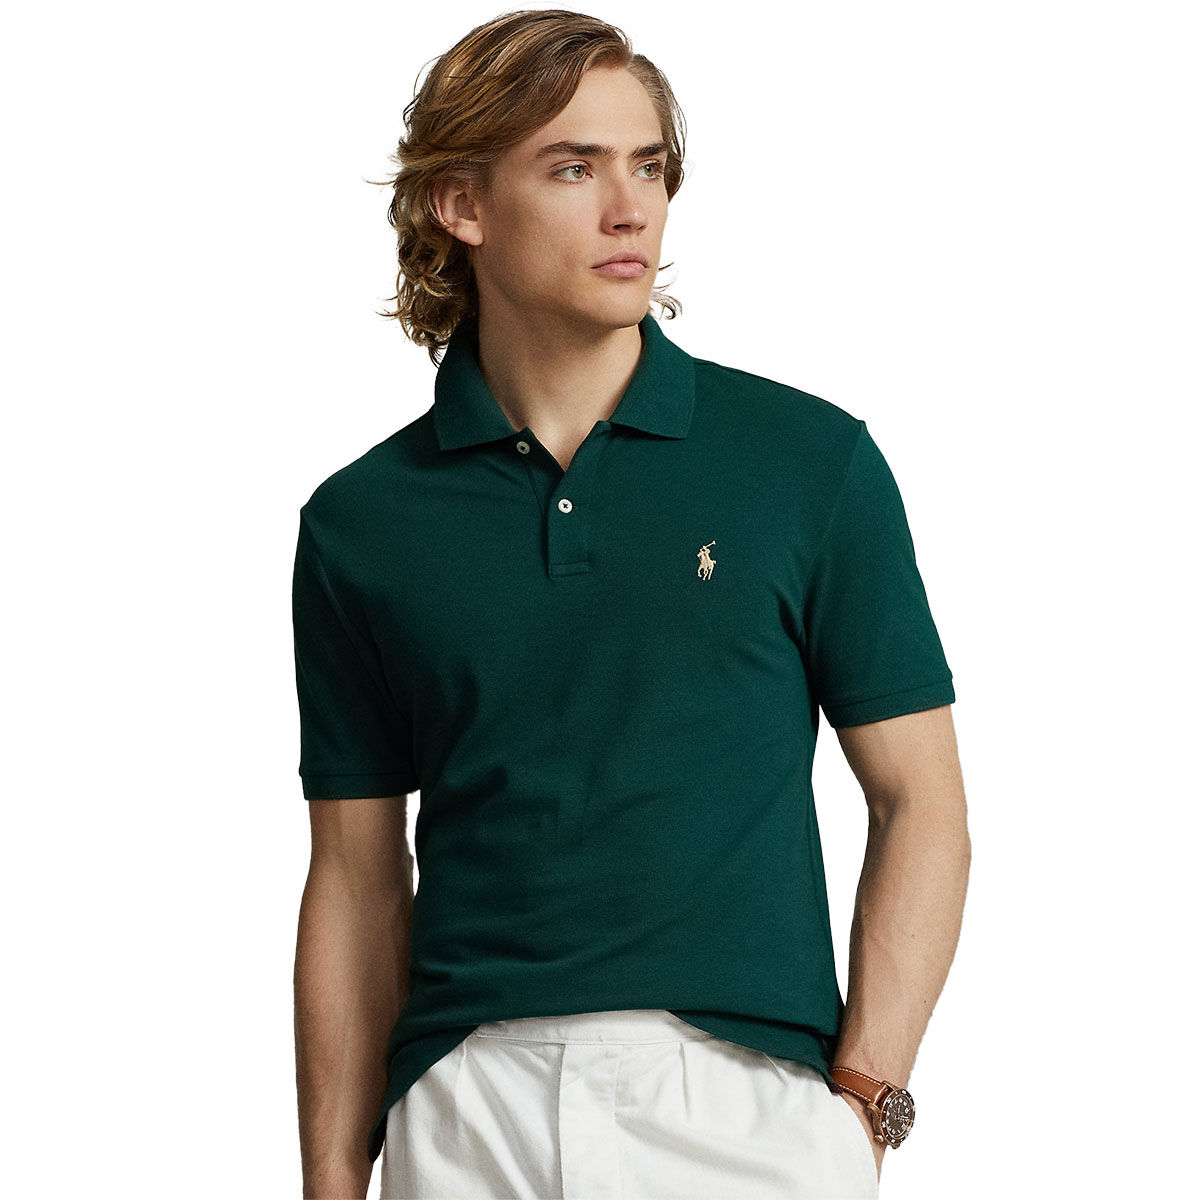 Ralph Lauren Men’s Custom Pro Fit Performance Golf Polo Shirt, Mens, Moss agate, Medium | American Golf